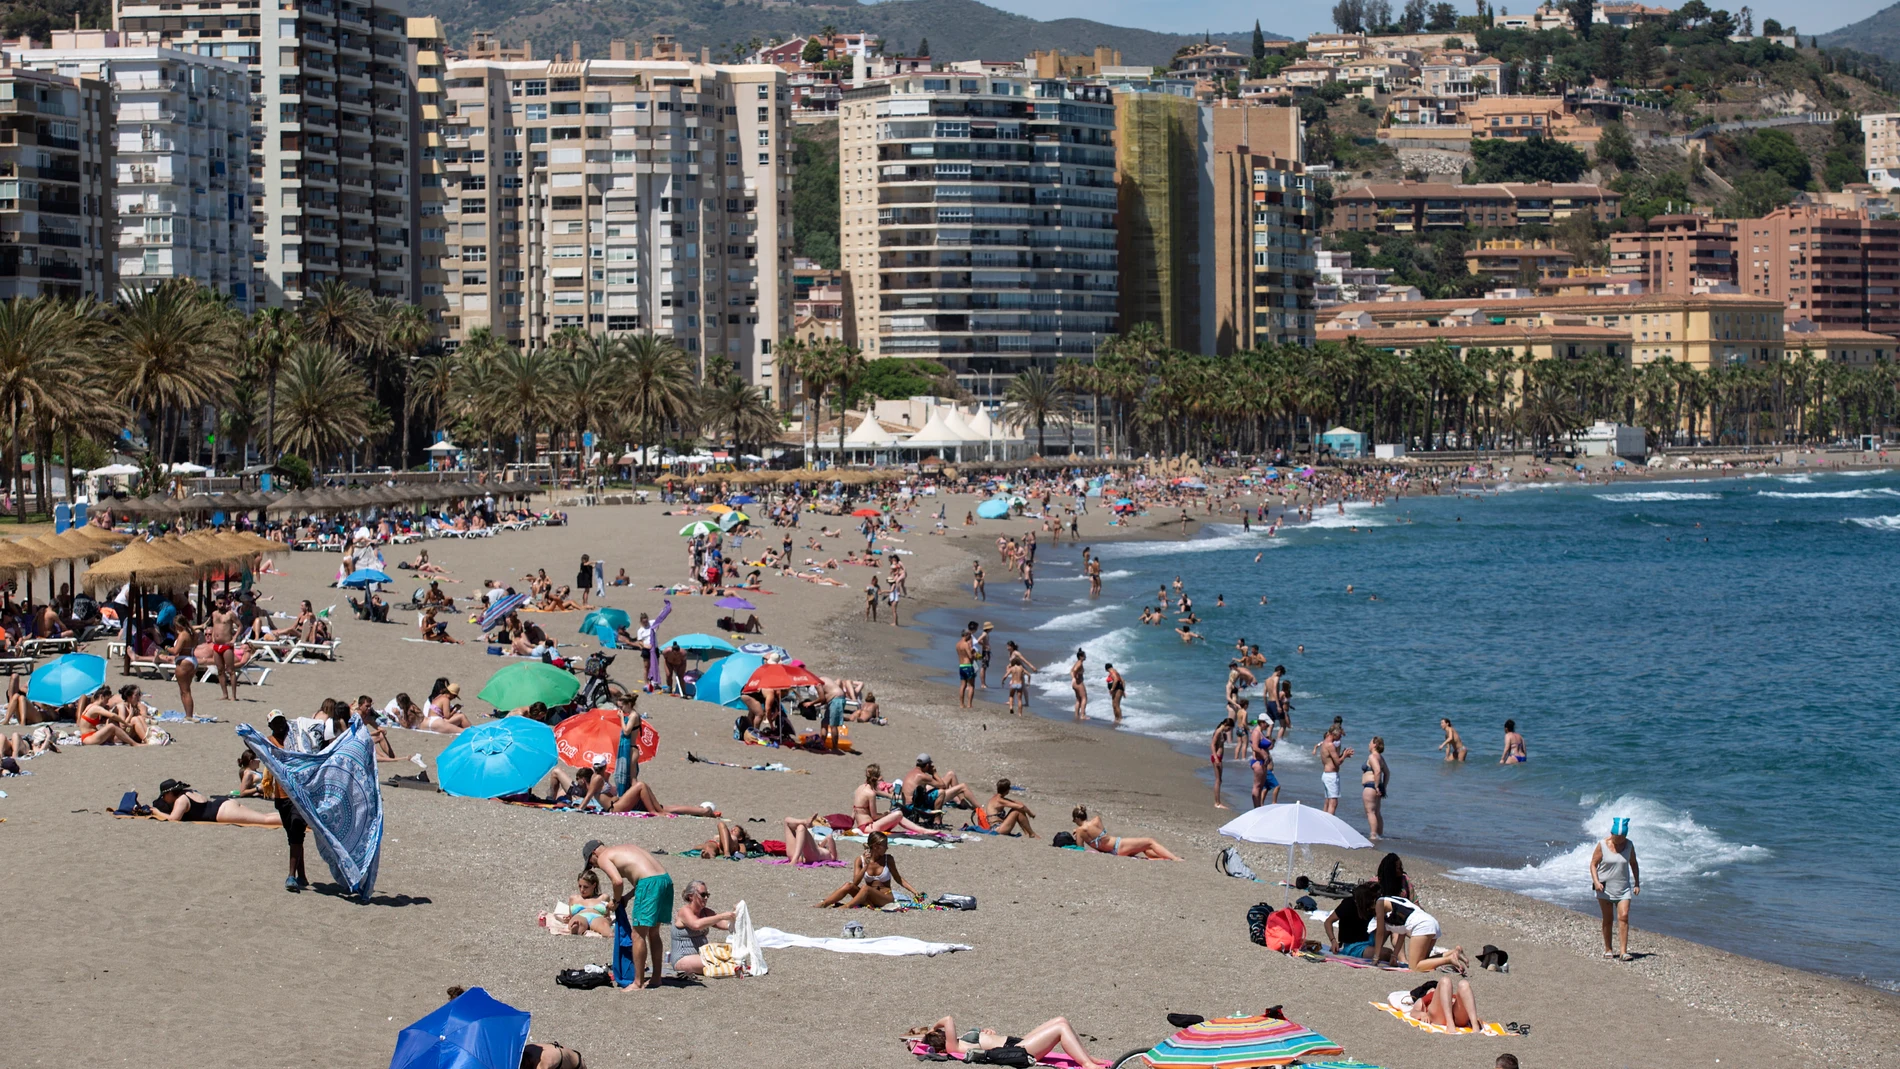 Numerosas personas disfrutan de un día de playa en La Malagueta de la capital malagueña. EFE/Daniel Pérez